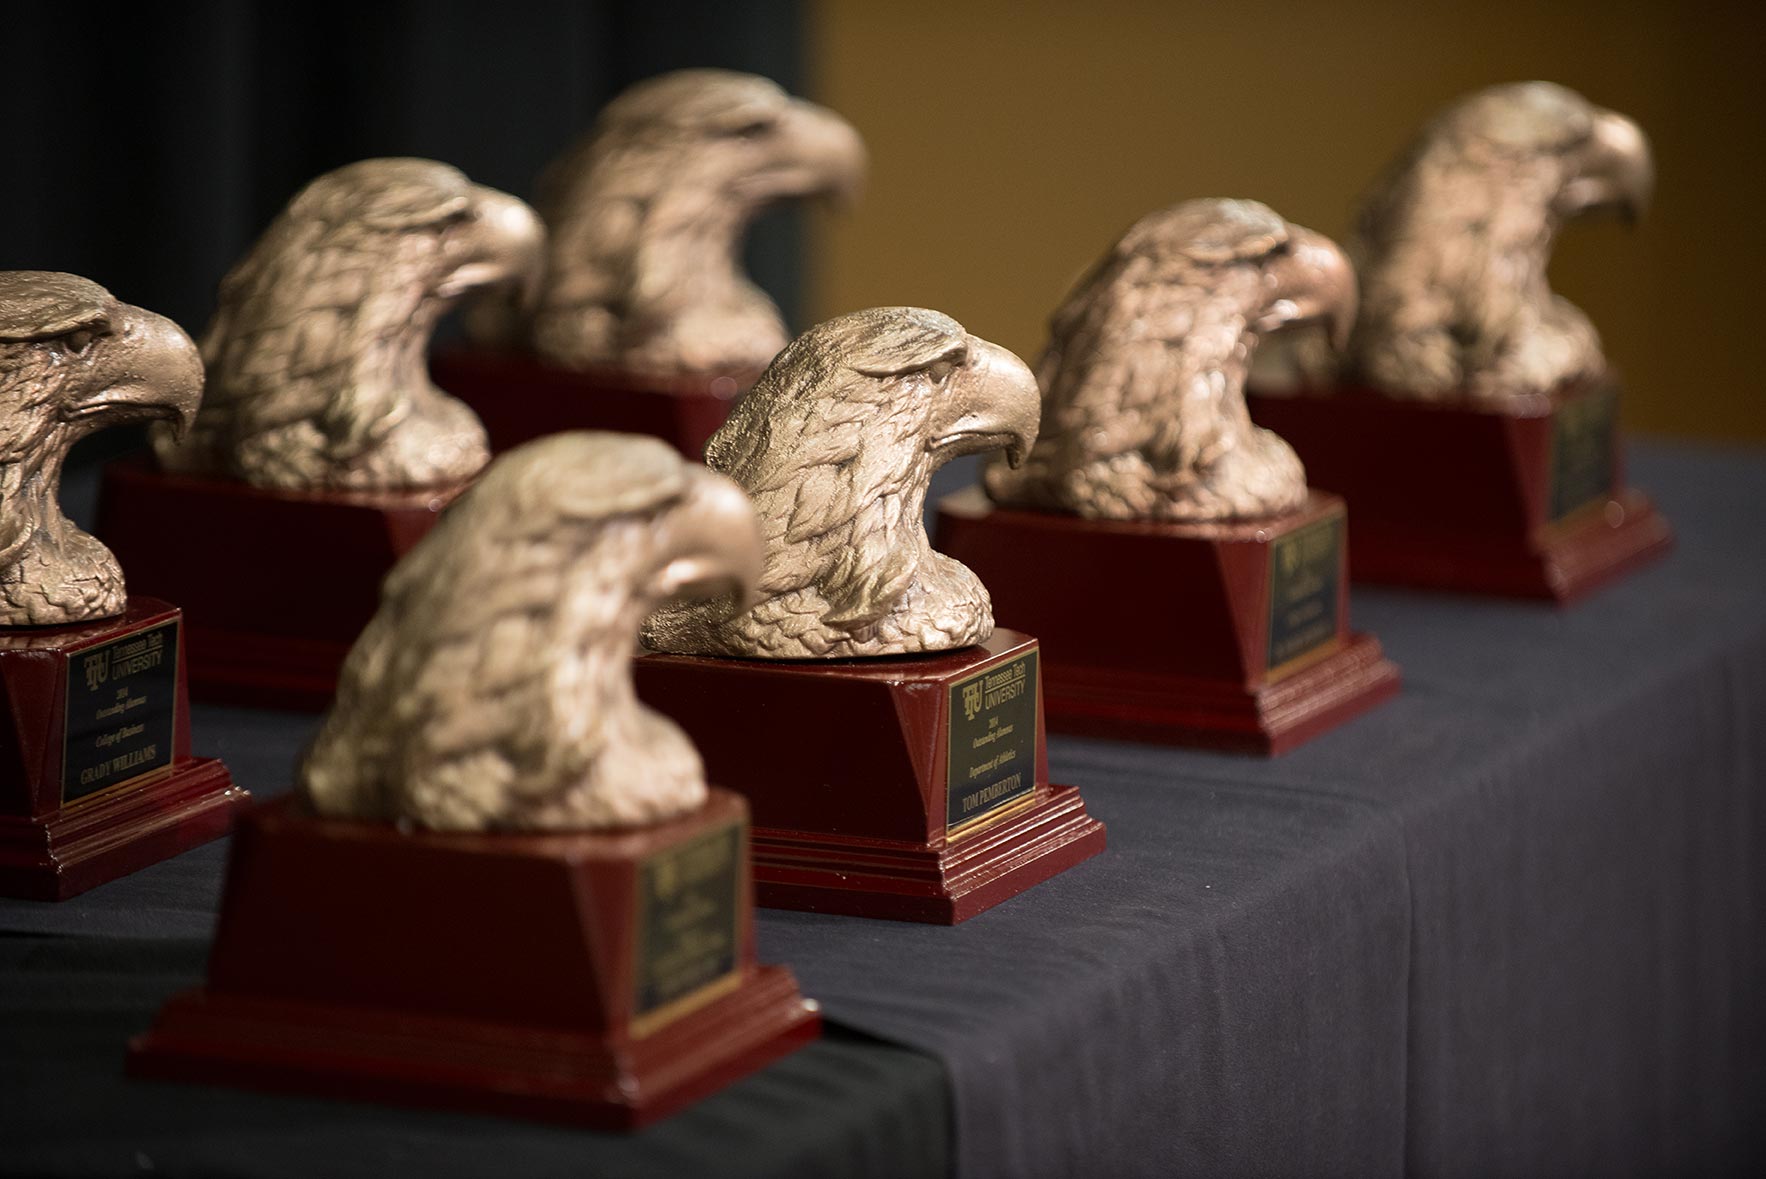 eagle head alumni awards on a table